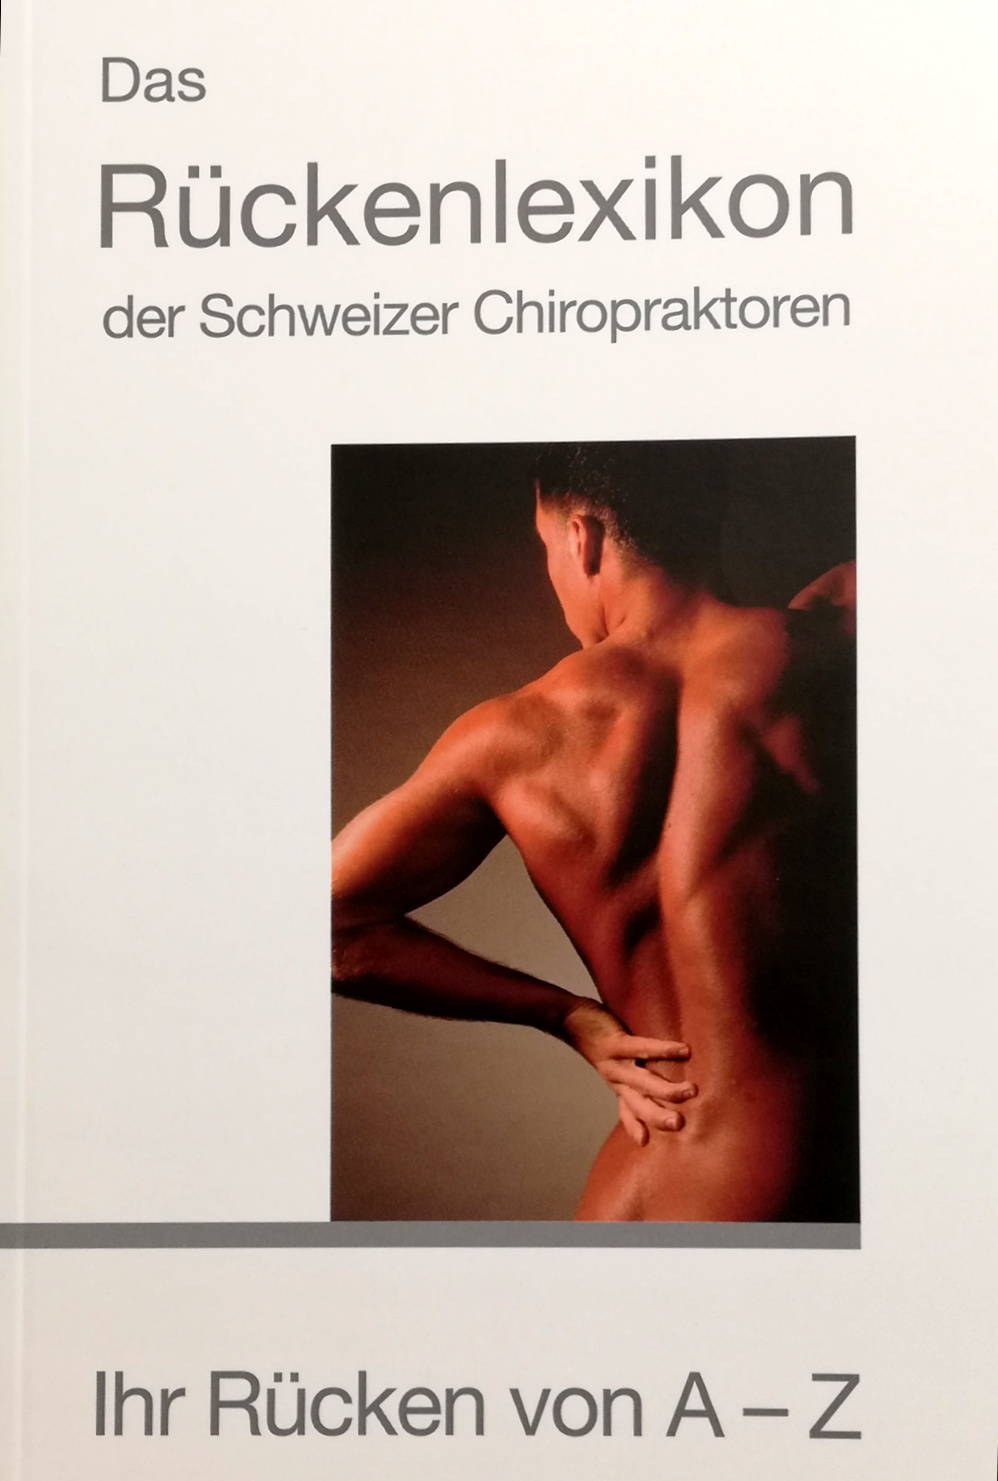 Das Rückenlexikon der Schweizer Chiropraktorinnen und Chiropraktoren. Ihr Rücken von A-Z